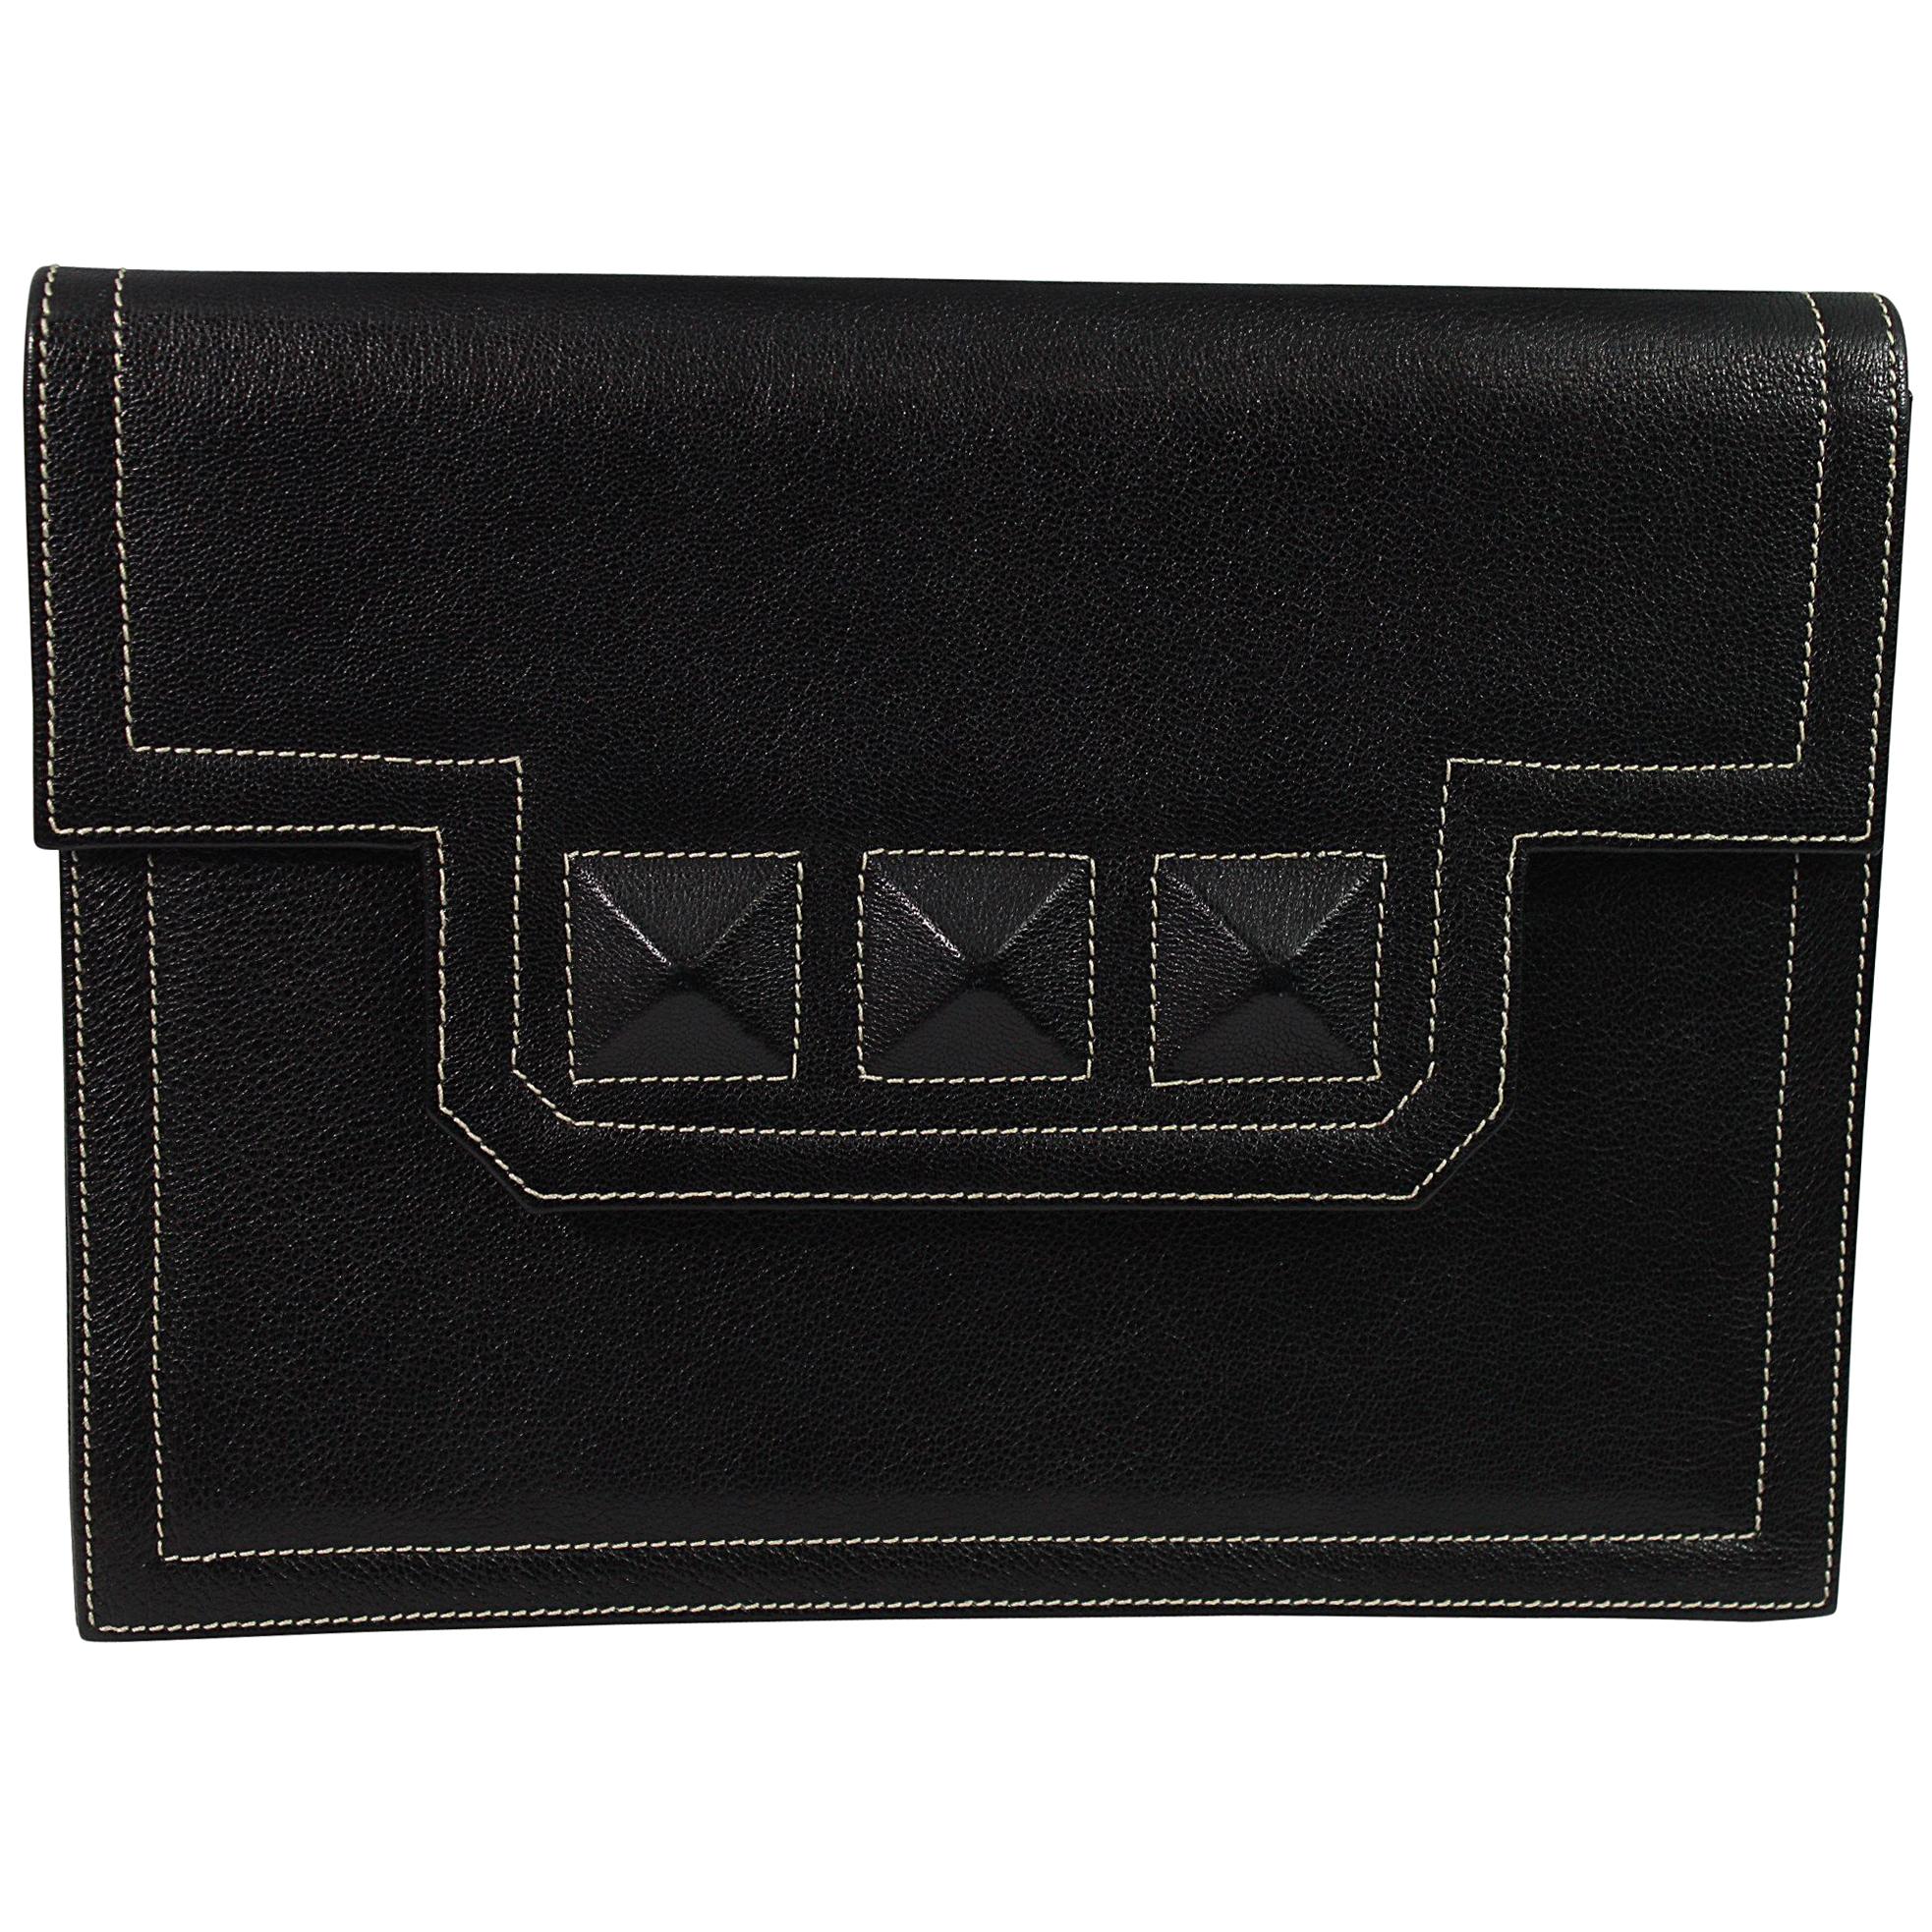 Yves Saint Laurent Spike Medor Style Black Vintage Clutch